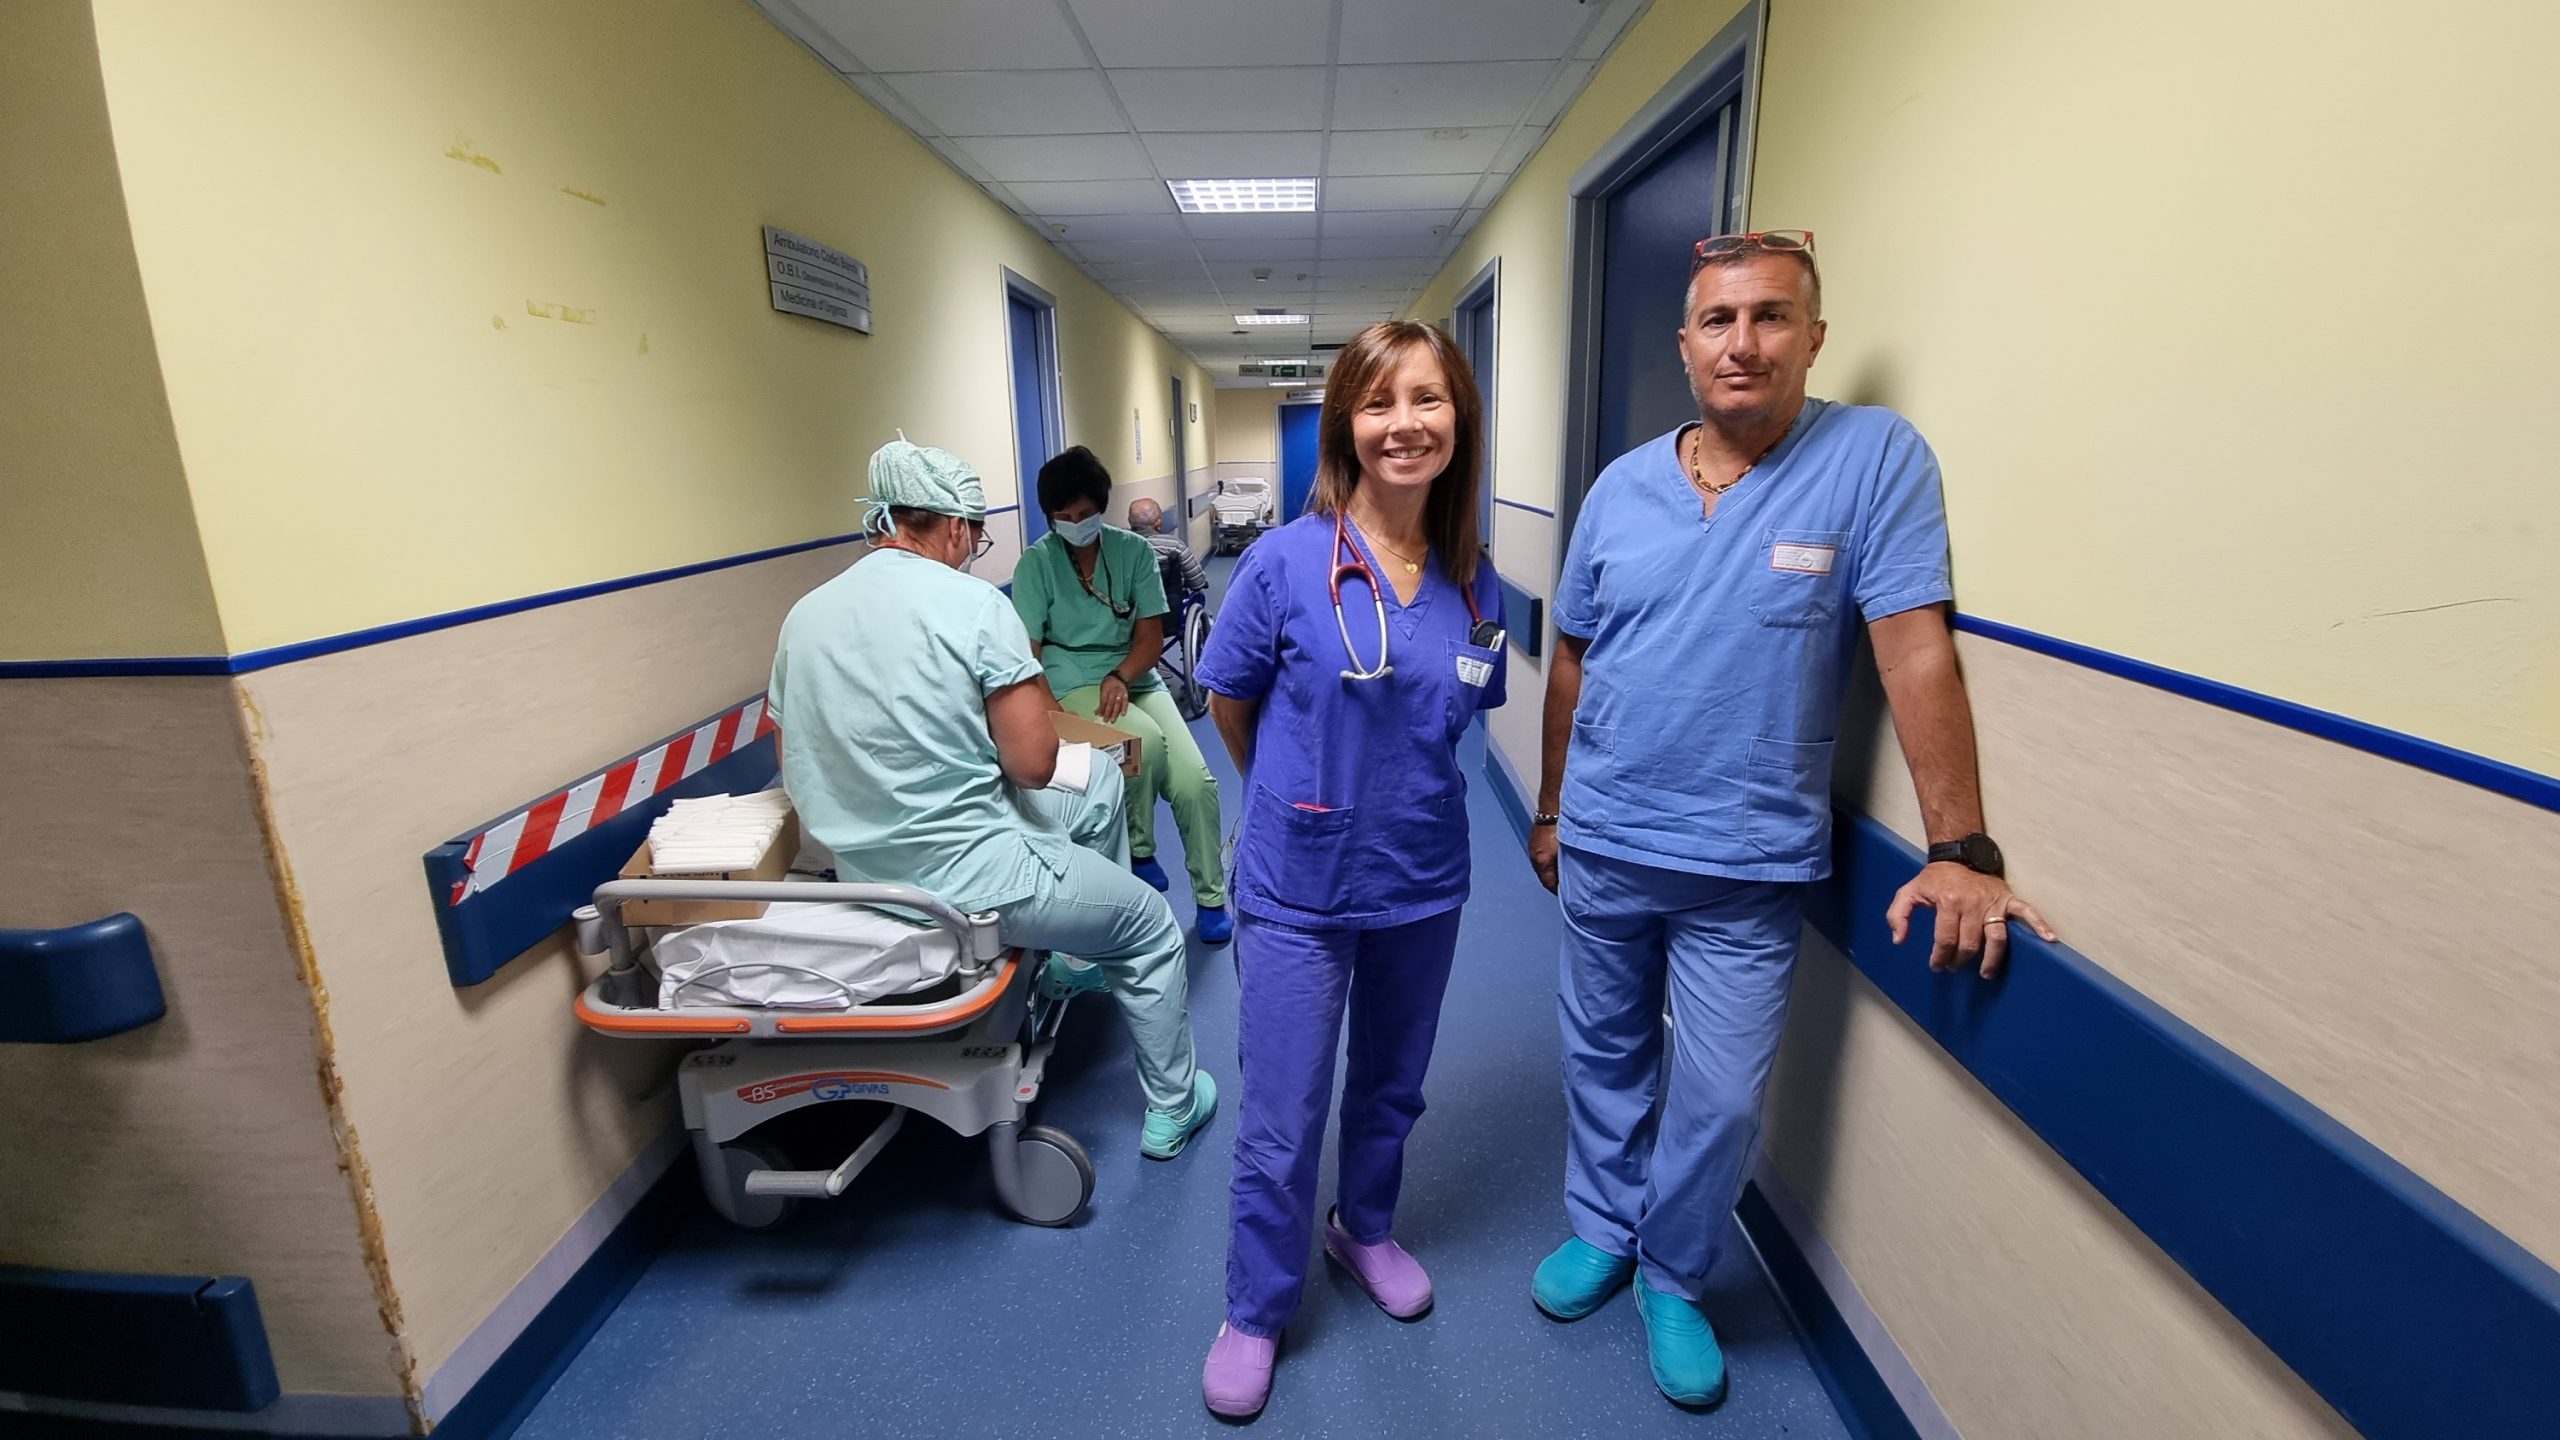 Ospedale San Martino: “Ecco il Pronto Soccorso”